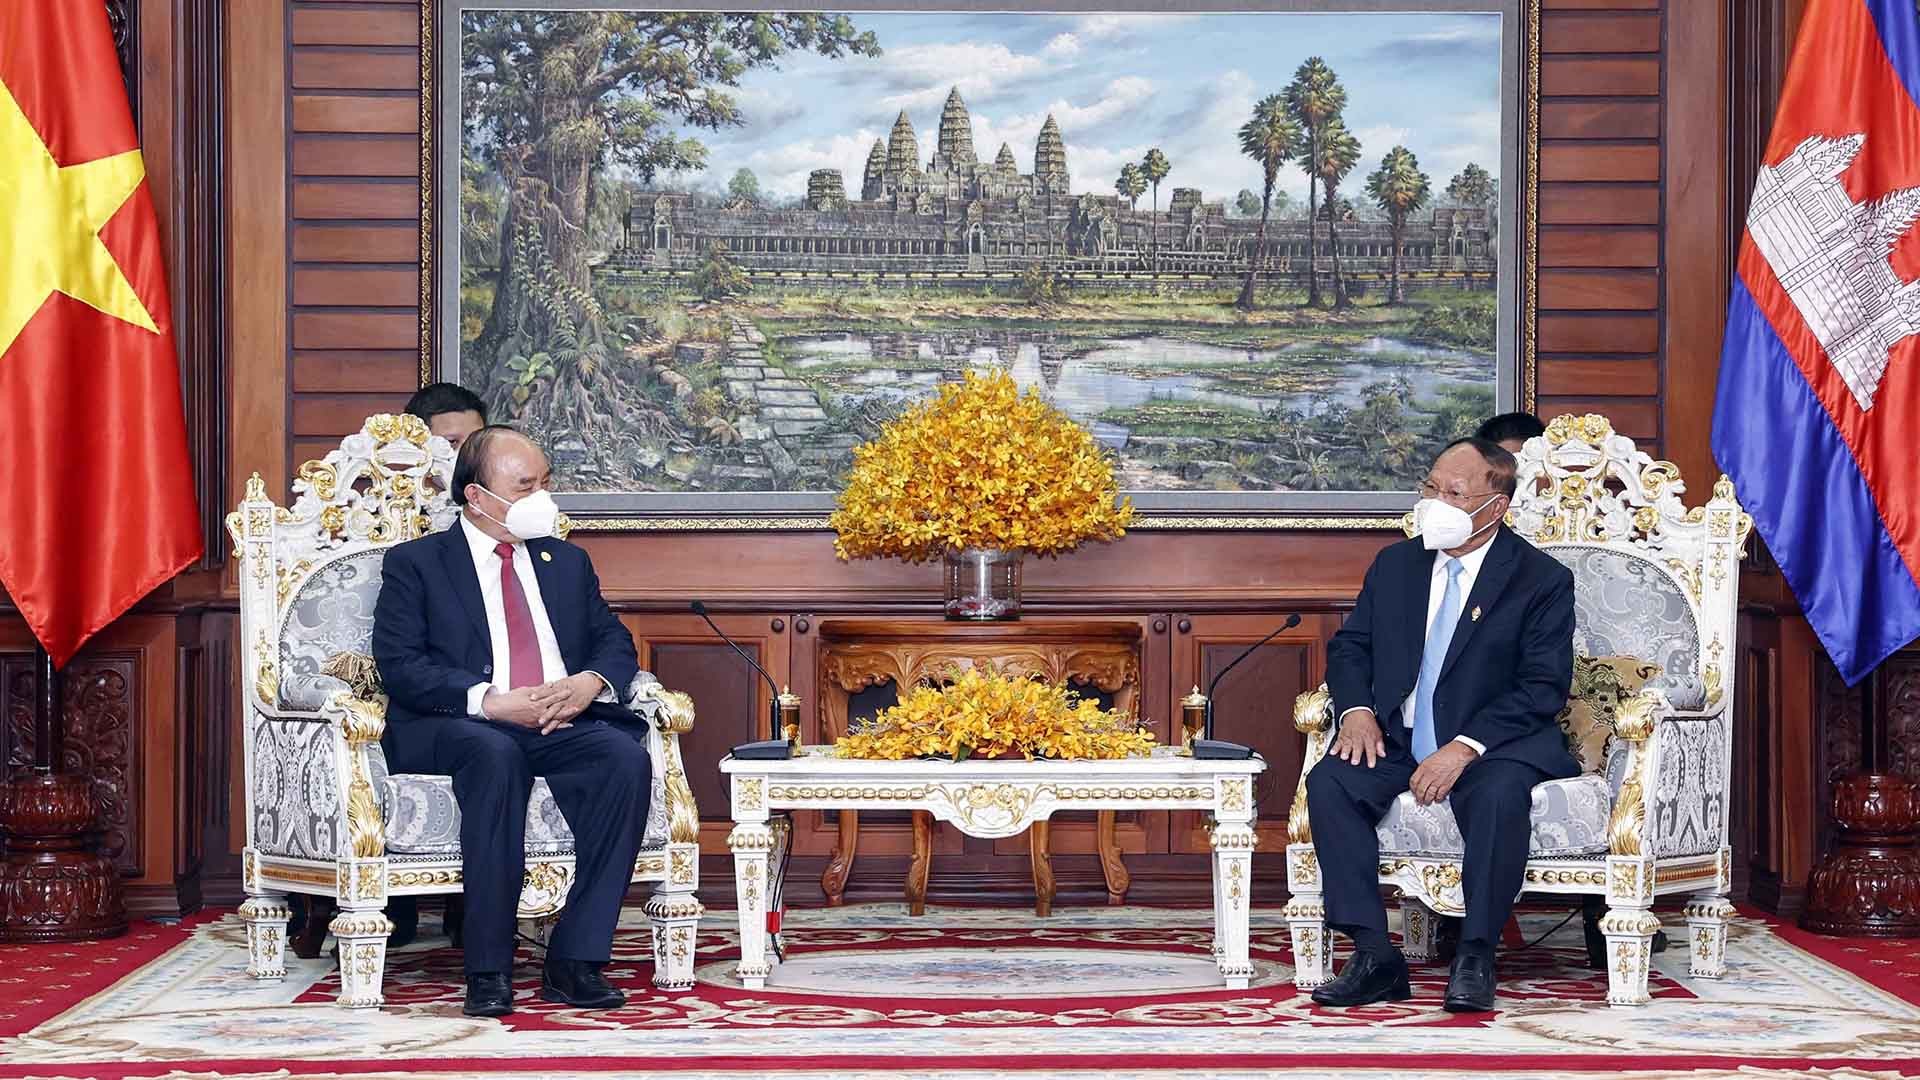 Quan hệ Việt Nam - Campuchia được củng cố mạnh mẽ hơn nữa khi hai nước tiếp tục đẩy mạnh hợp tác kinh tế, chính trị và văn hóa. Quan hệ song phương sẽ phát triển tiếp tục, tạo ra nhiều cơ hội và lợi ích cho cả hai quốc gia.